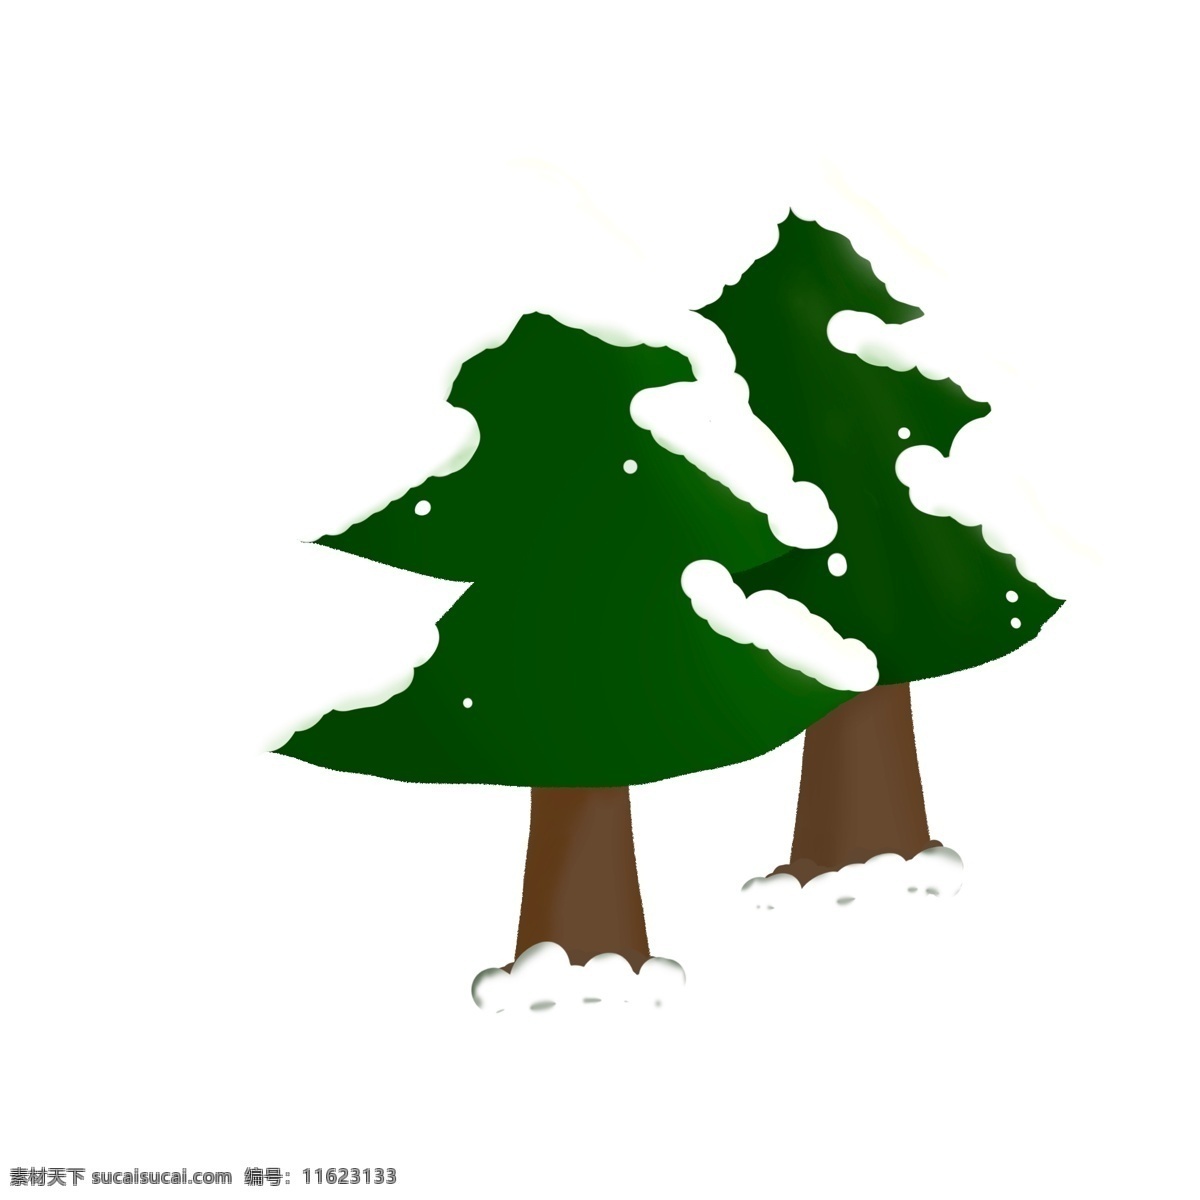 手绘 卡通 冬季 圣诞节 雪 树 儿童 绘 装饰 元素 冬 松树 圣诞树 卡通树 雪树 圣诞节树 卡通雪树 手绘树 手绘雪树 设计元素 装饰元素